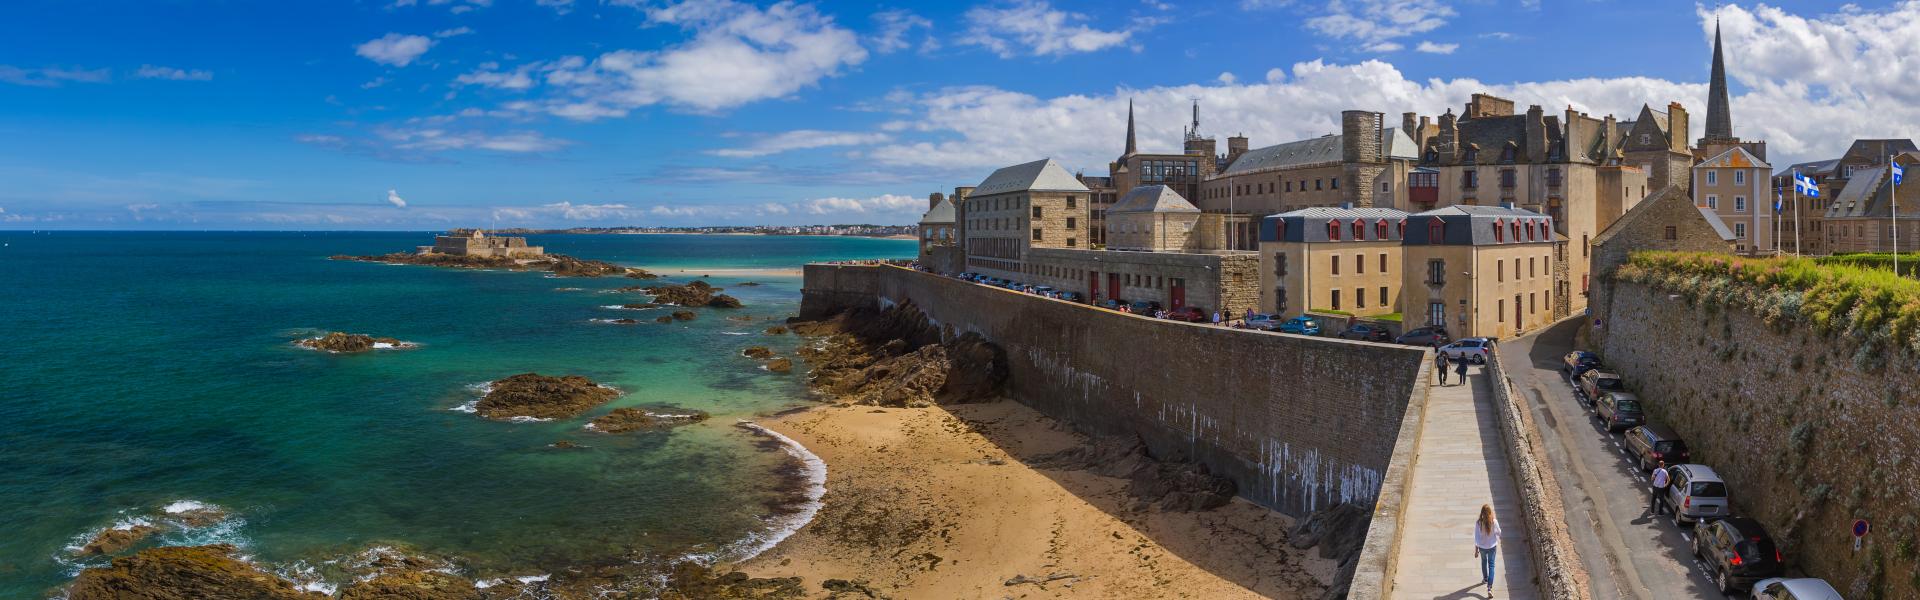 Ferienwohnungen & Ferienhäuser für Urlaub in Saint-Malo - Casamundo